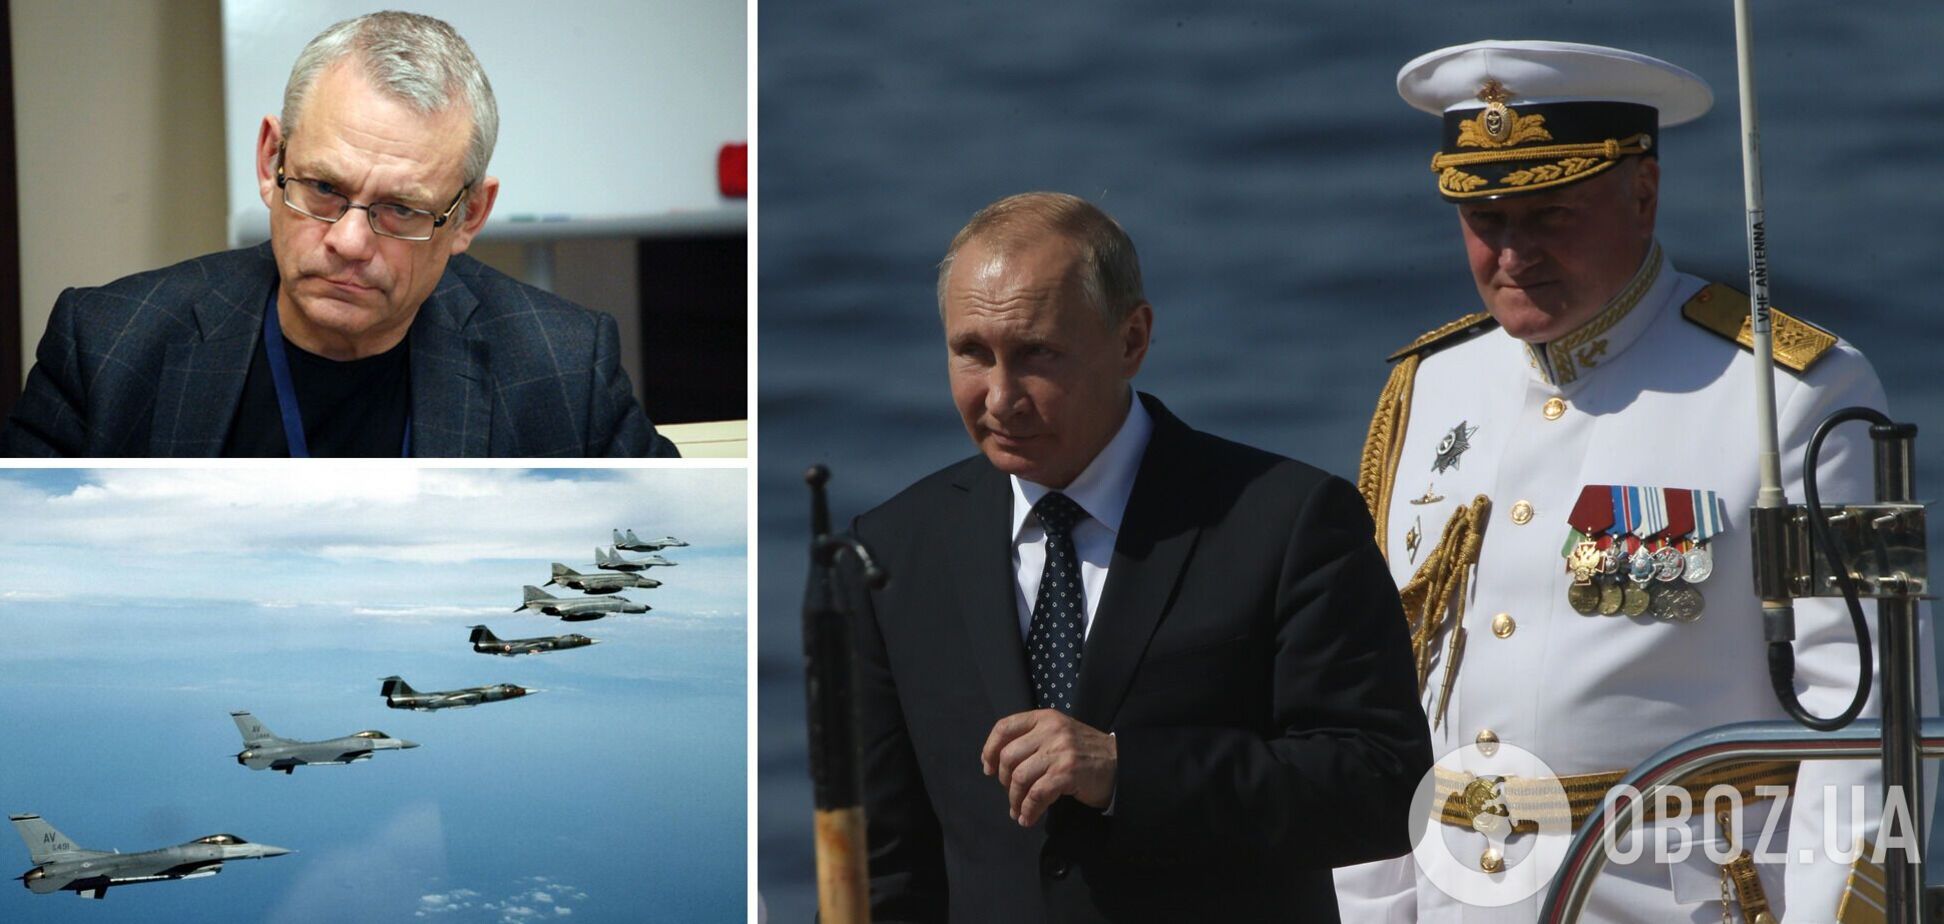 Запад в состоянии раздавить Россию, не поднимая в воздух самолеты НАТО: блиц-интервью с оппозиционером из РФ Яковенко